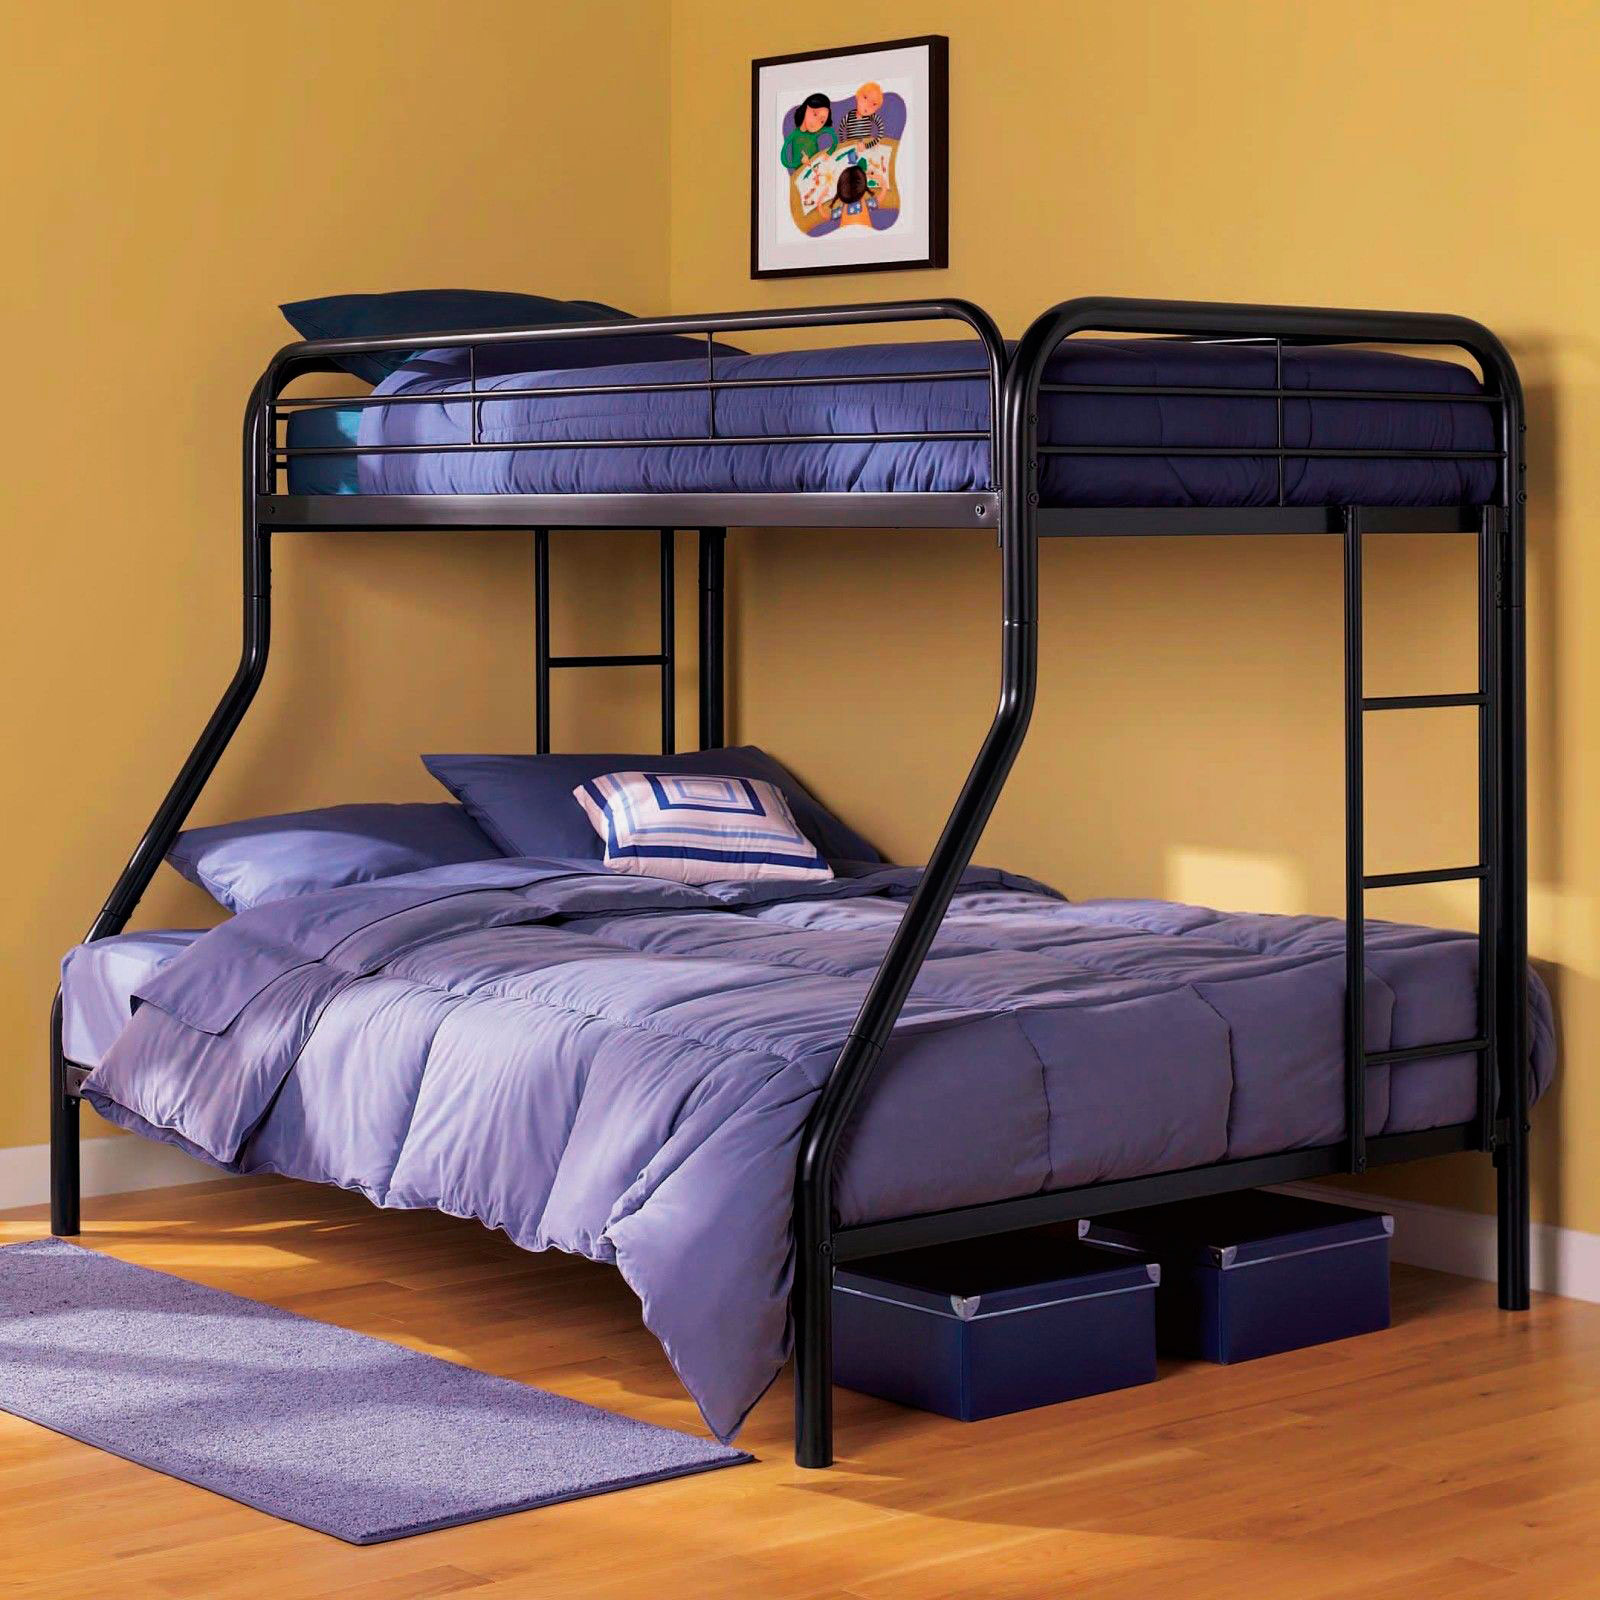 Двухъярусная двуспальная кровать для взрослых